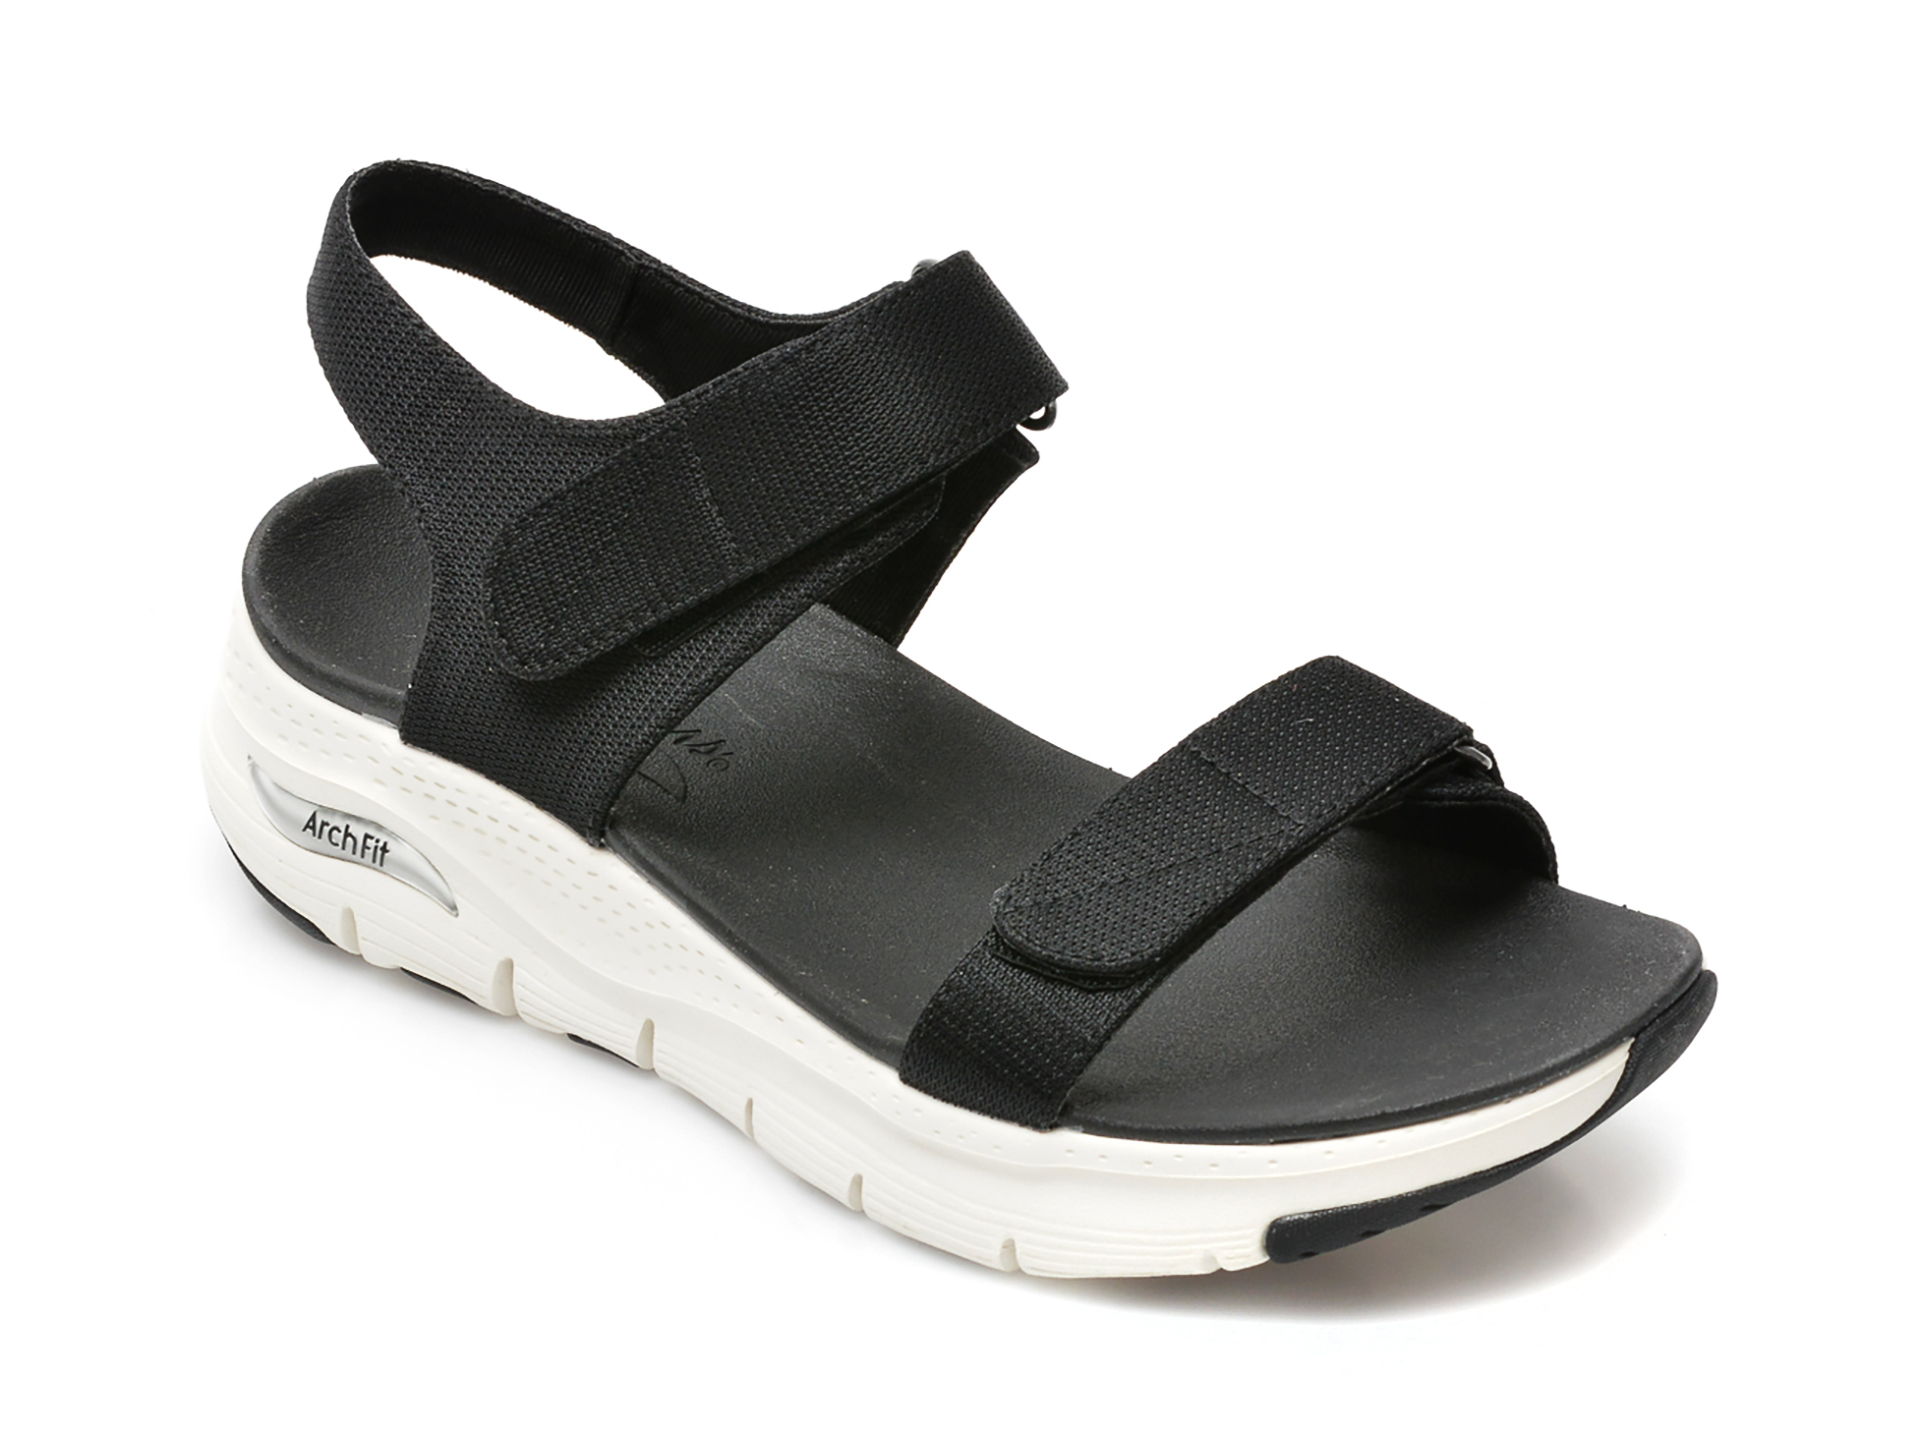 Sandale SKECHERS negre, ARCH FIT, din material textil /femei/sandale